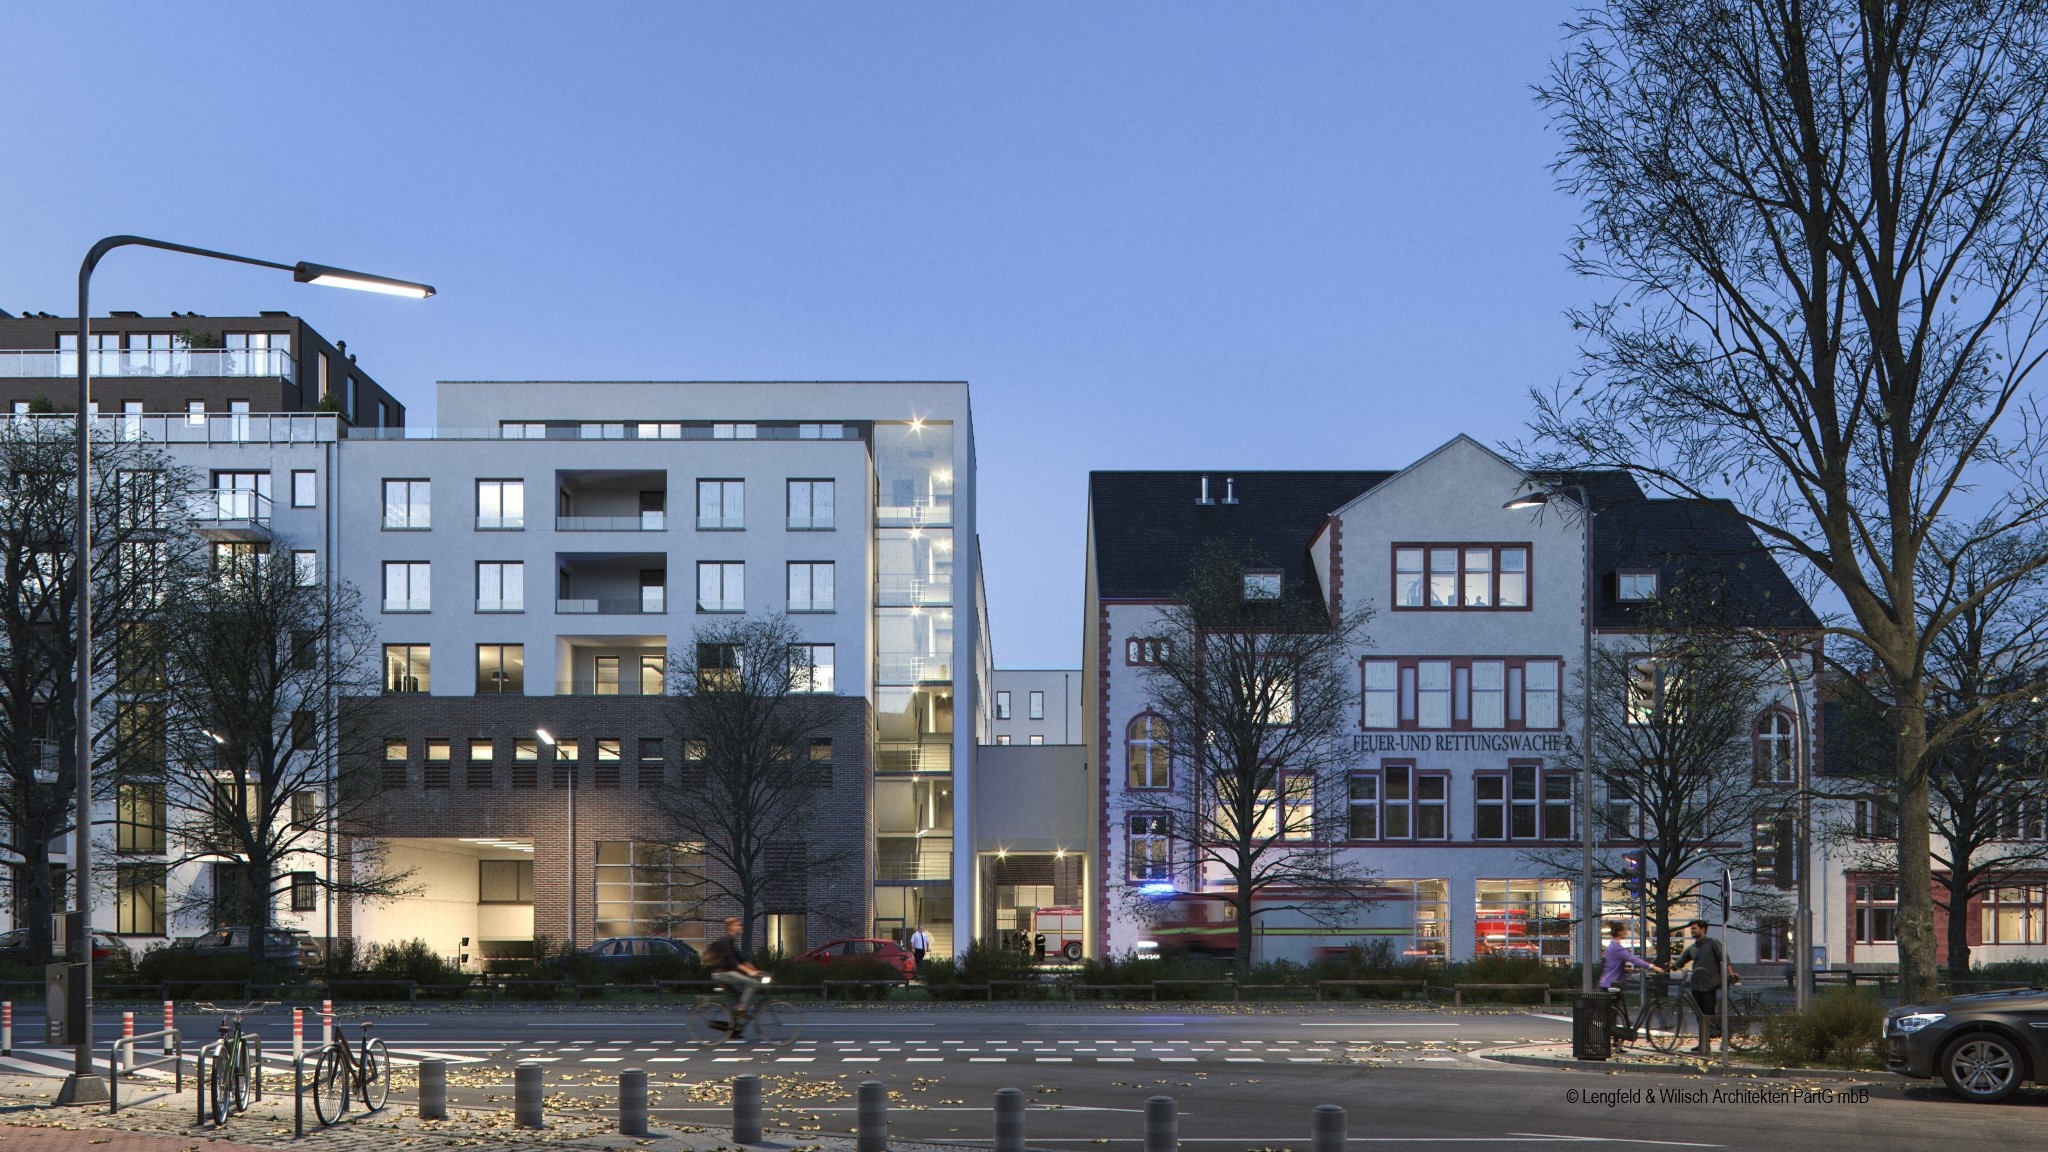 Feuer- und Rettungswache 2 | Gallus | Visualisierung des Neubaus ab 2025 | © Lengfeld & Wilisch Architekten PartG mbH